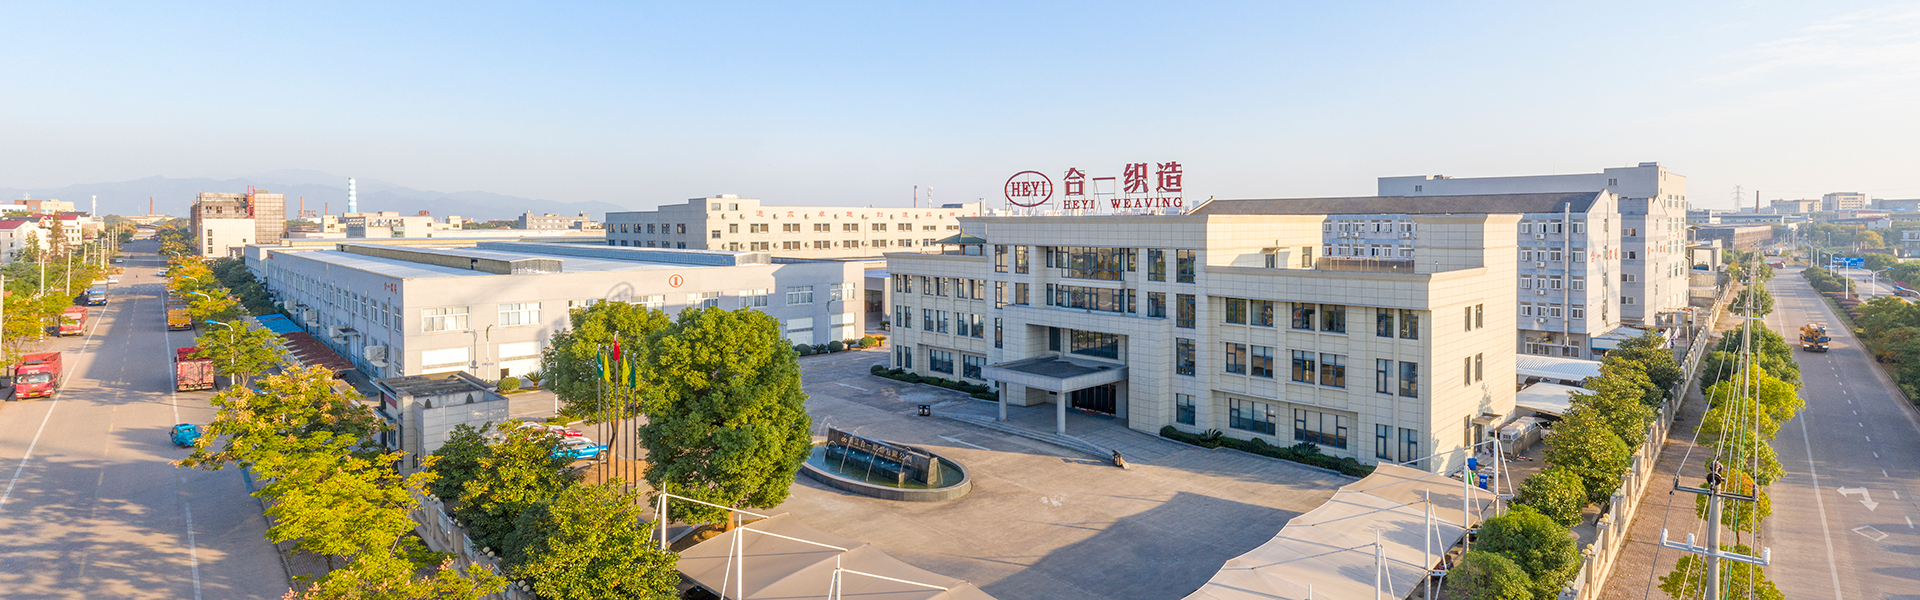 Zhejiang Heyi Weaving Co., Ltd.